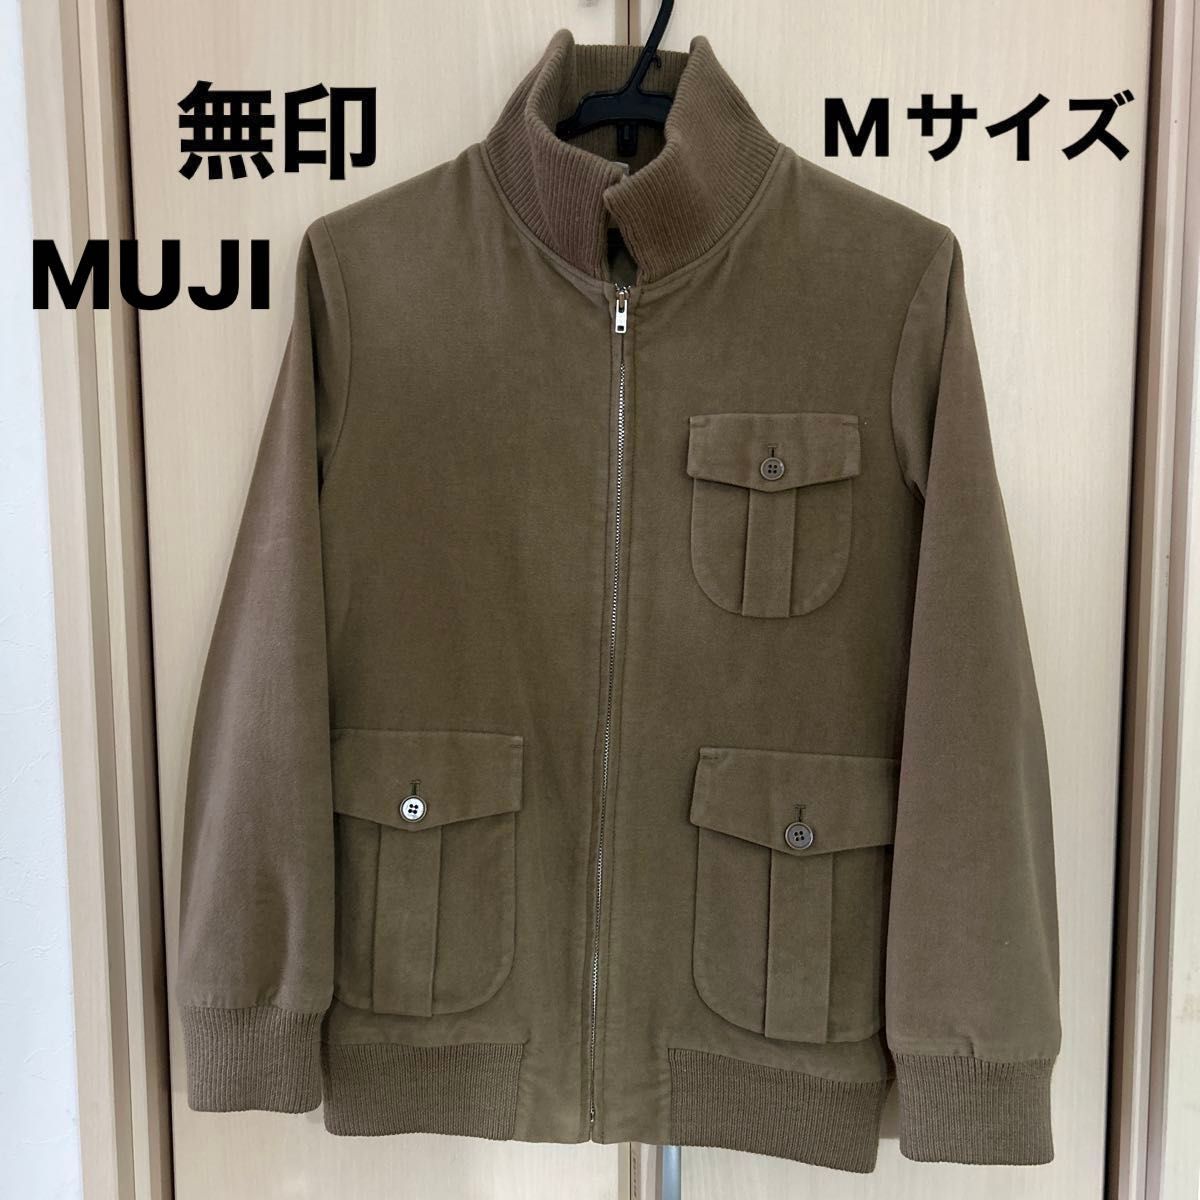 【無印良品】MUJI (USED) ベージュ ブルゾン ジップジャケット Mサイズ